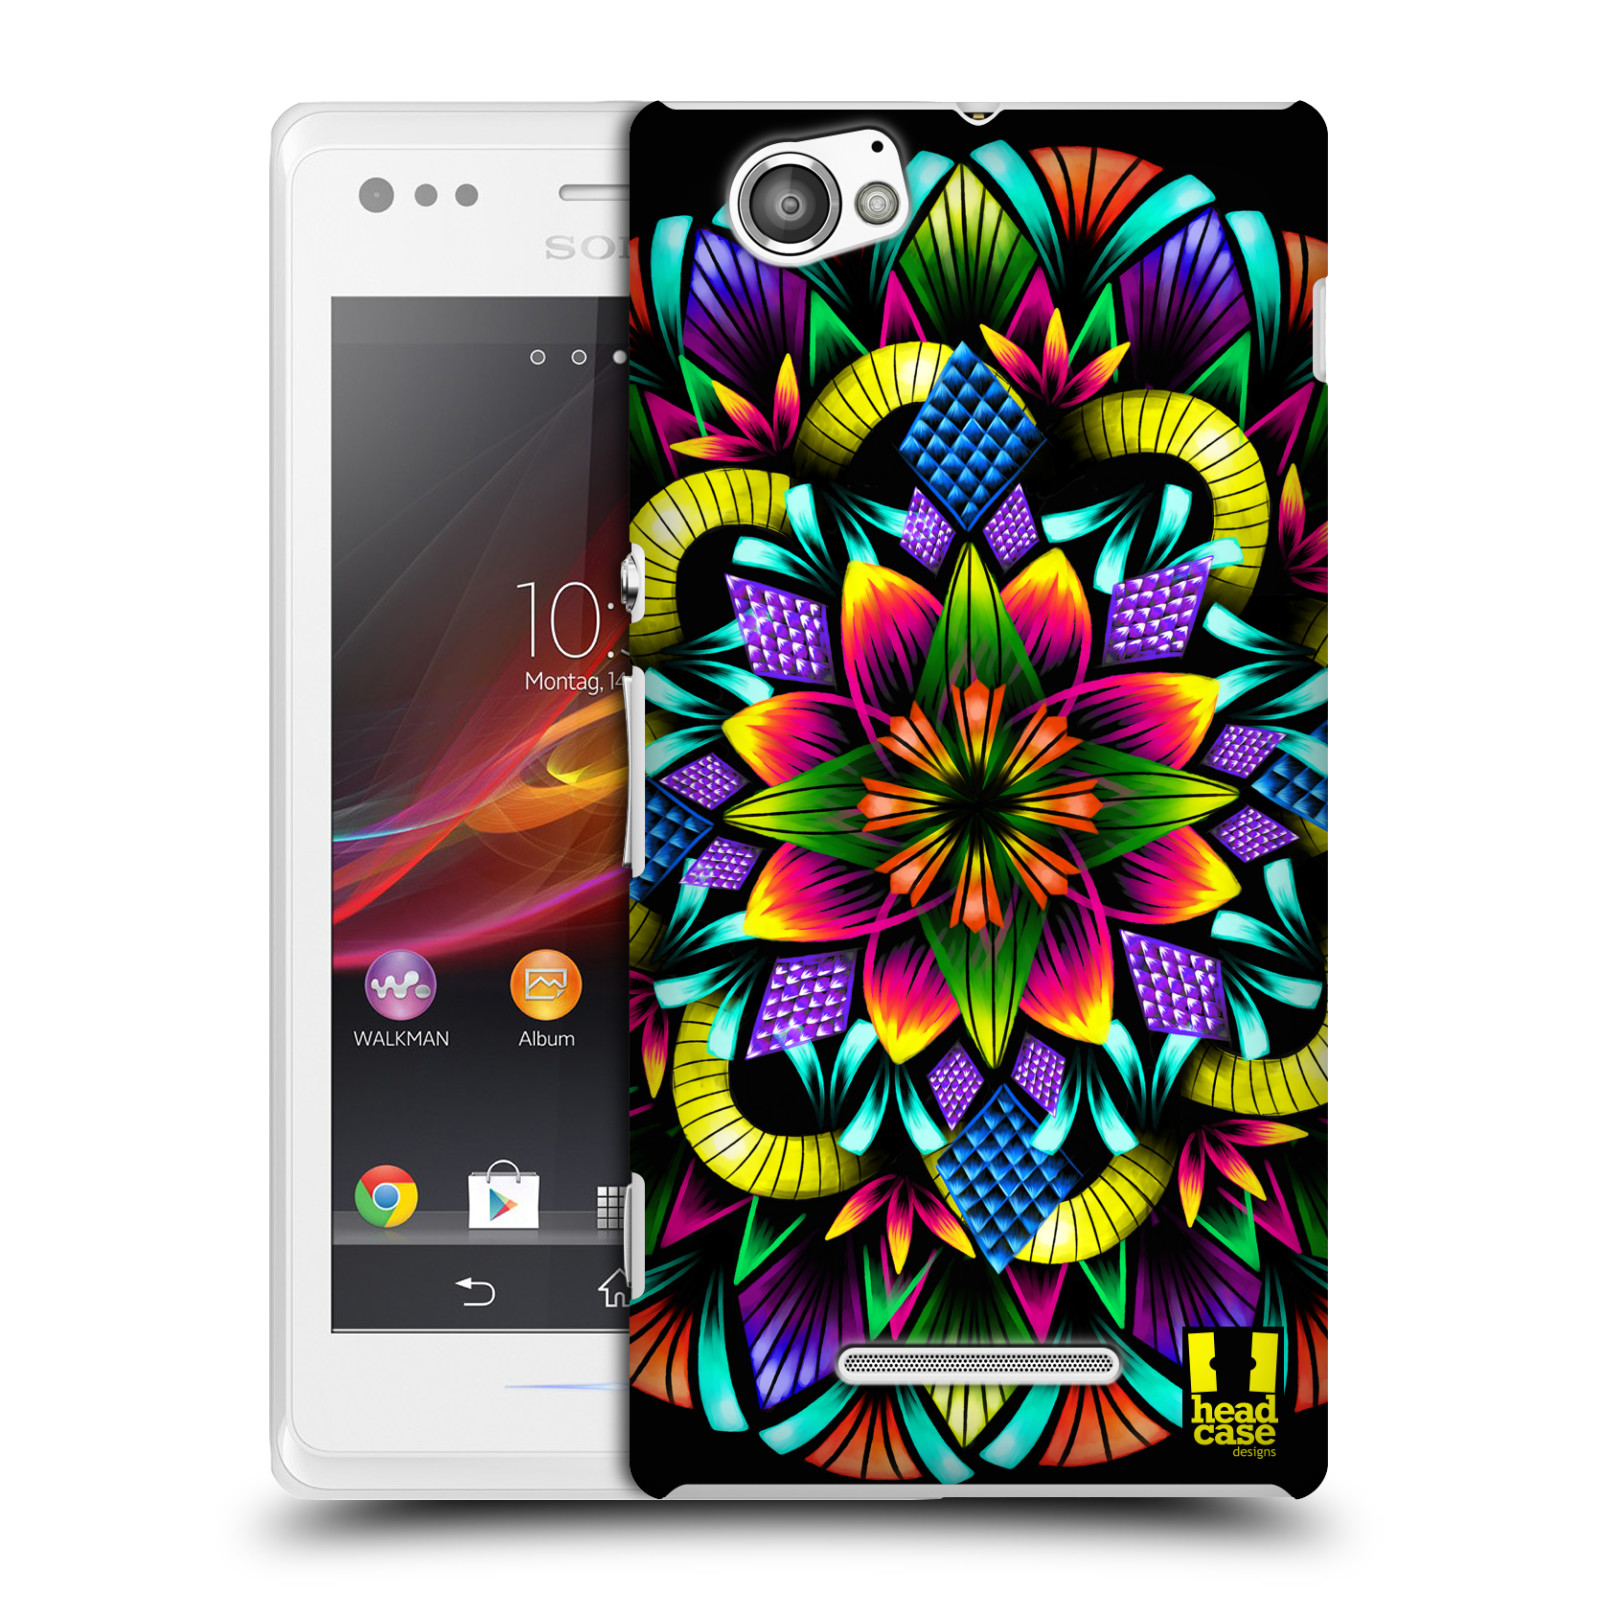 HEAD CASE plastový obal na mobil Sony Xperia M vzor Indie Mandala kaleidoskop barevný vzor KVĚTINA